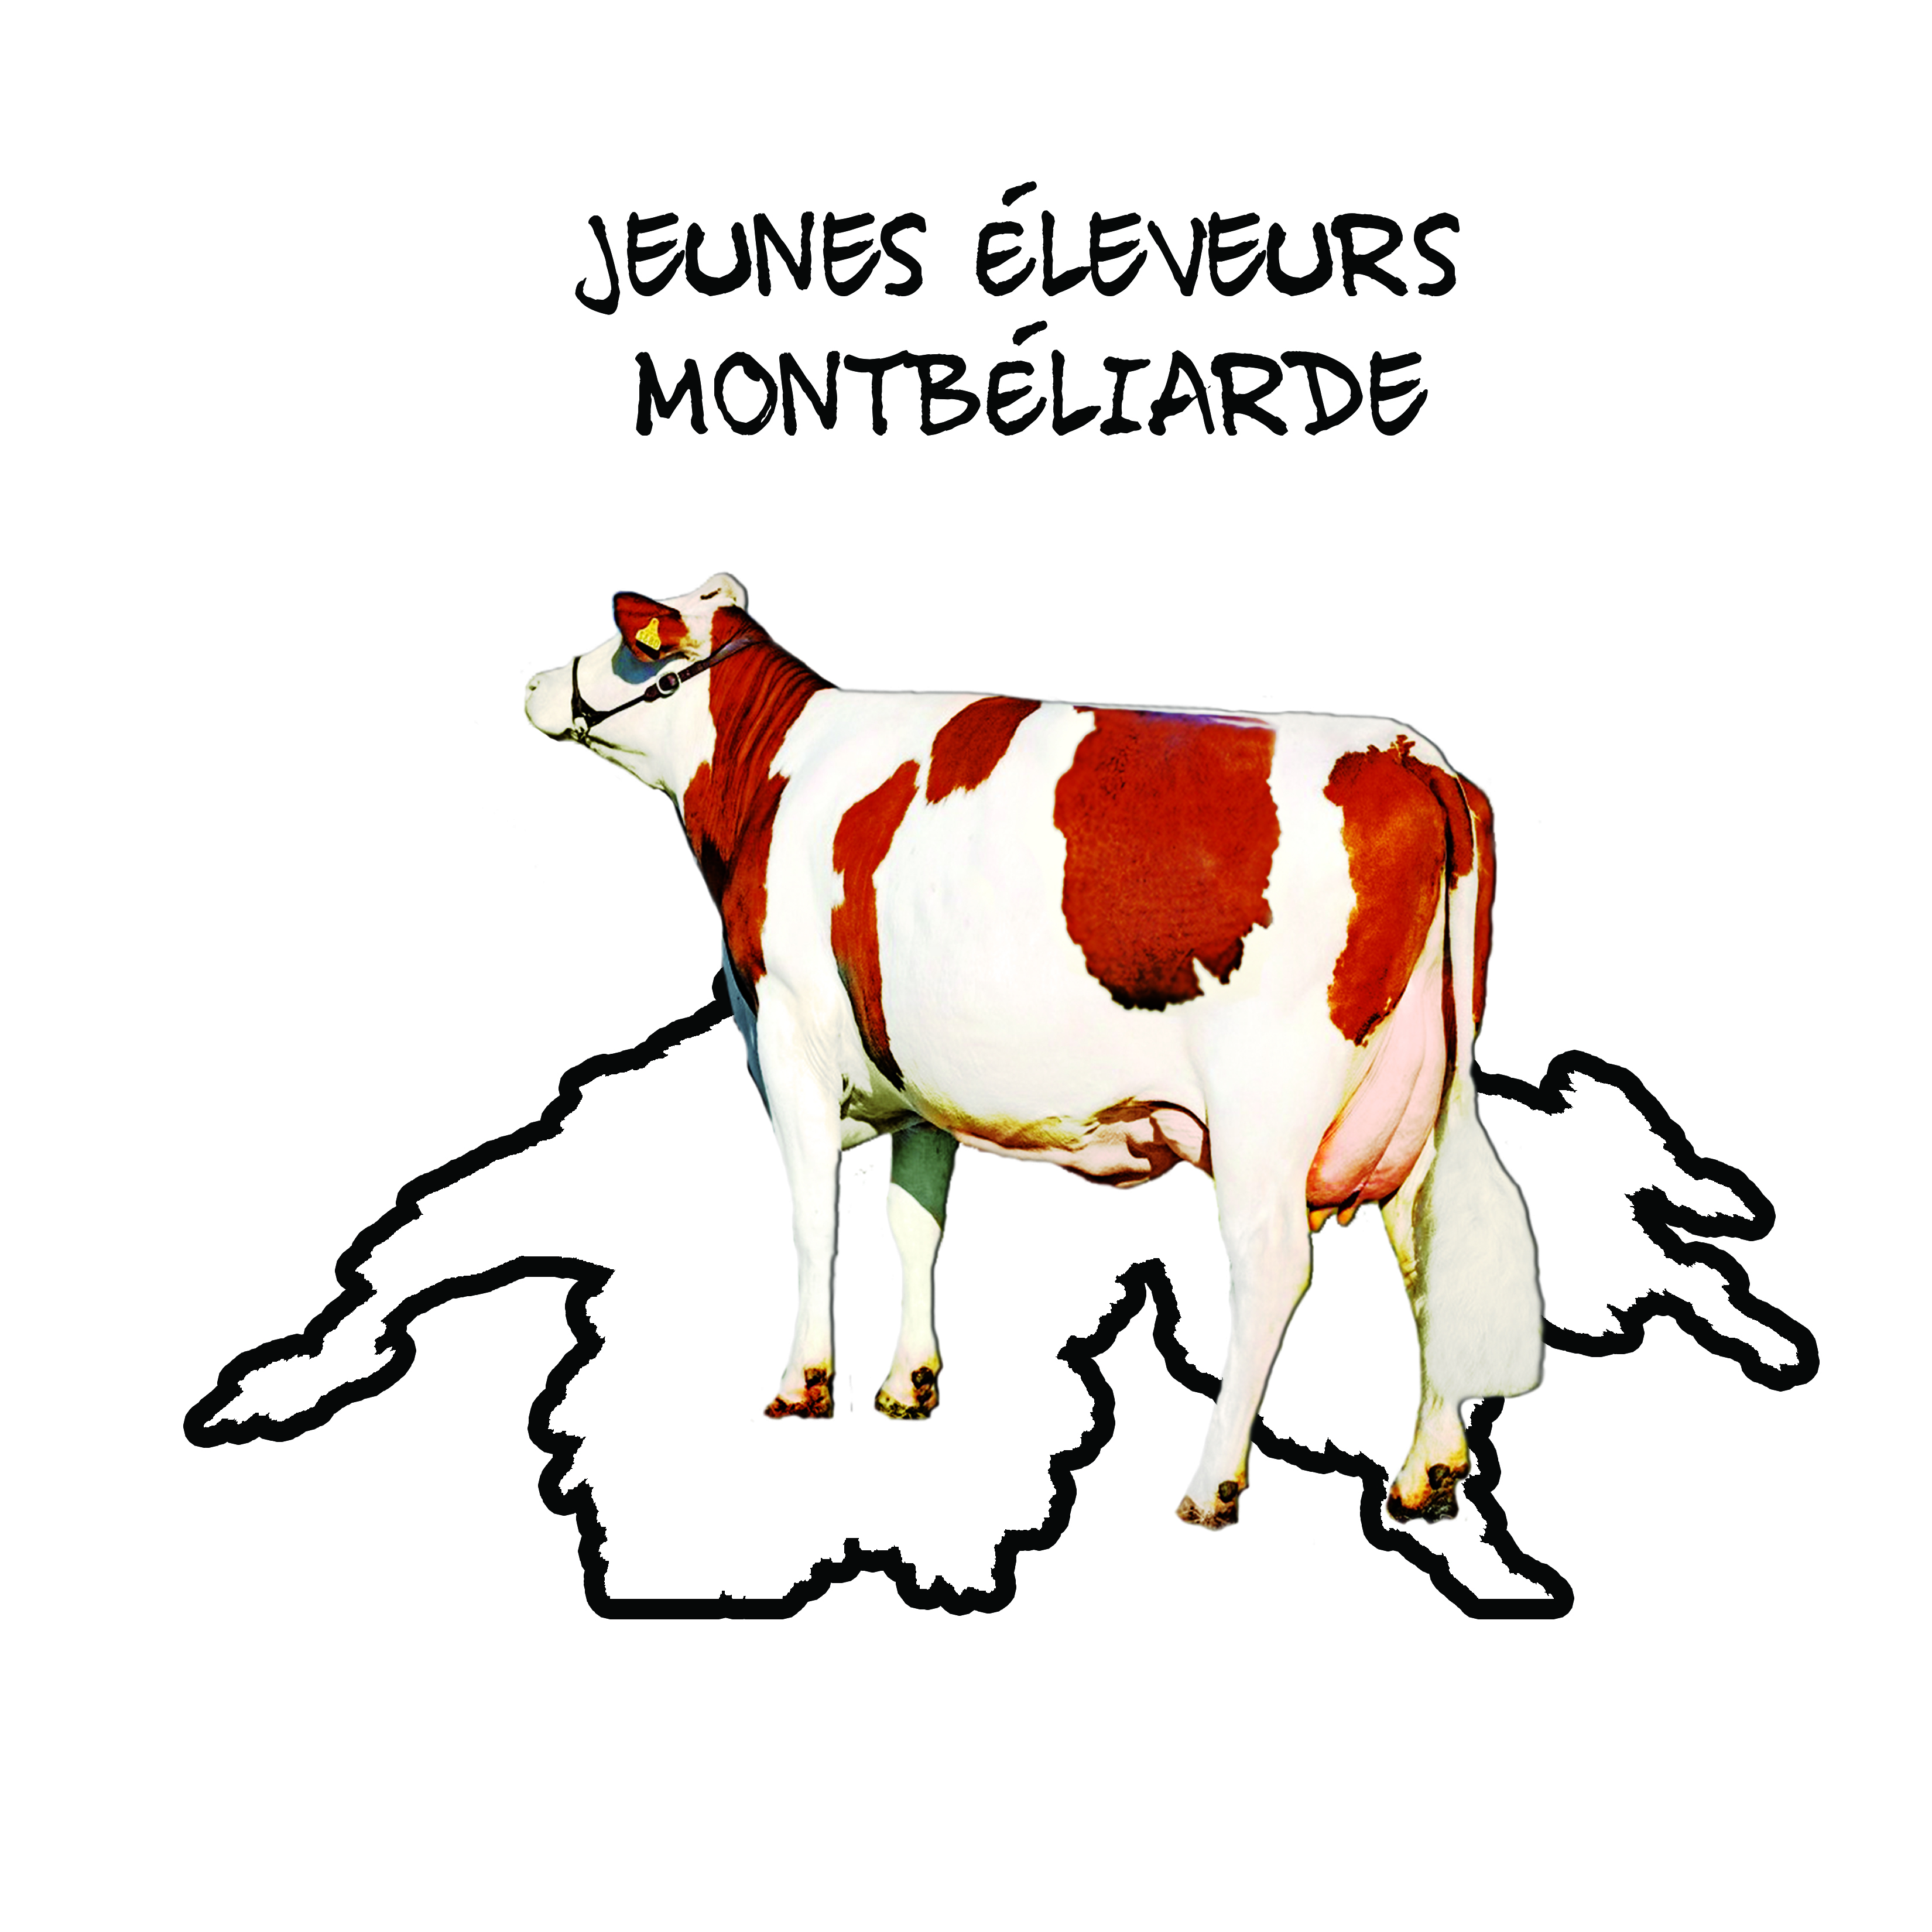 Logo jeunesses suisse png